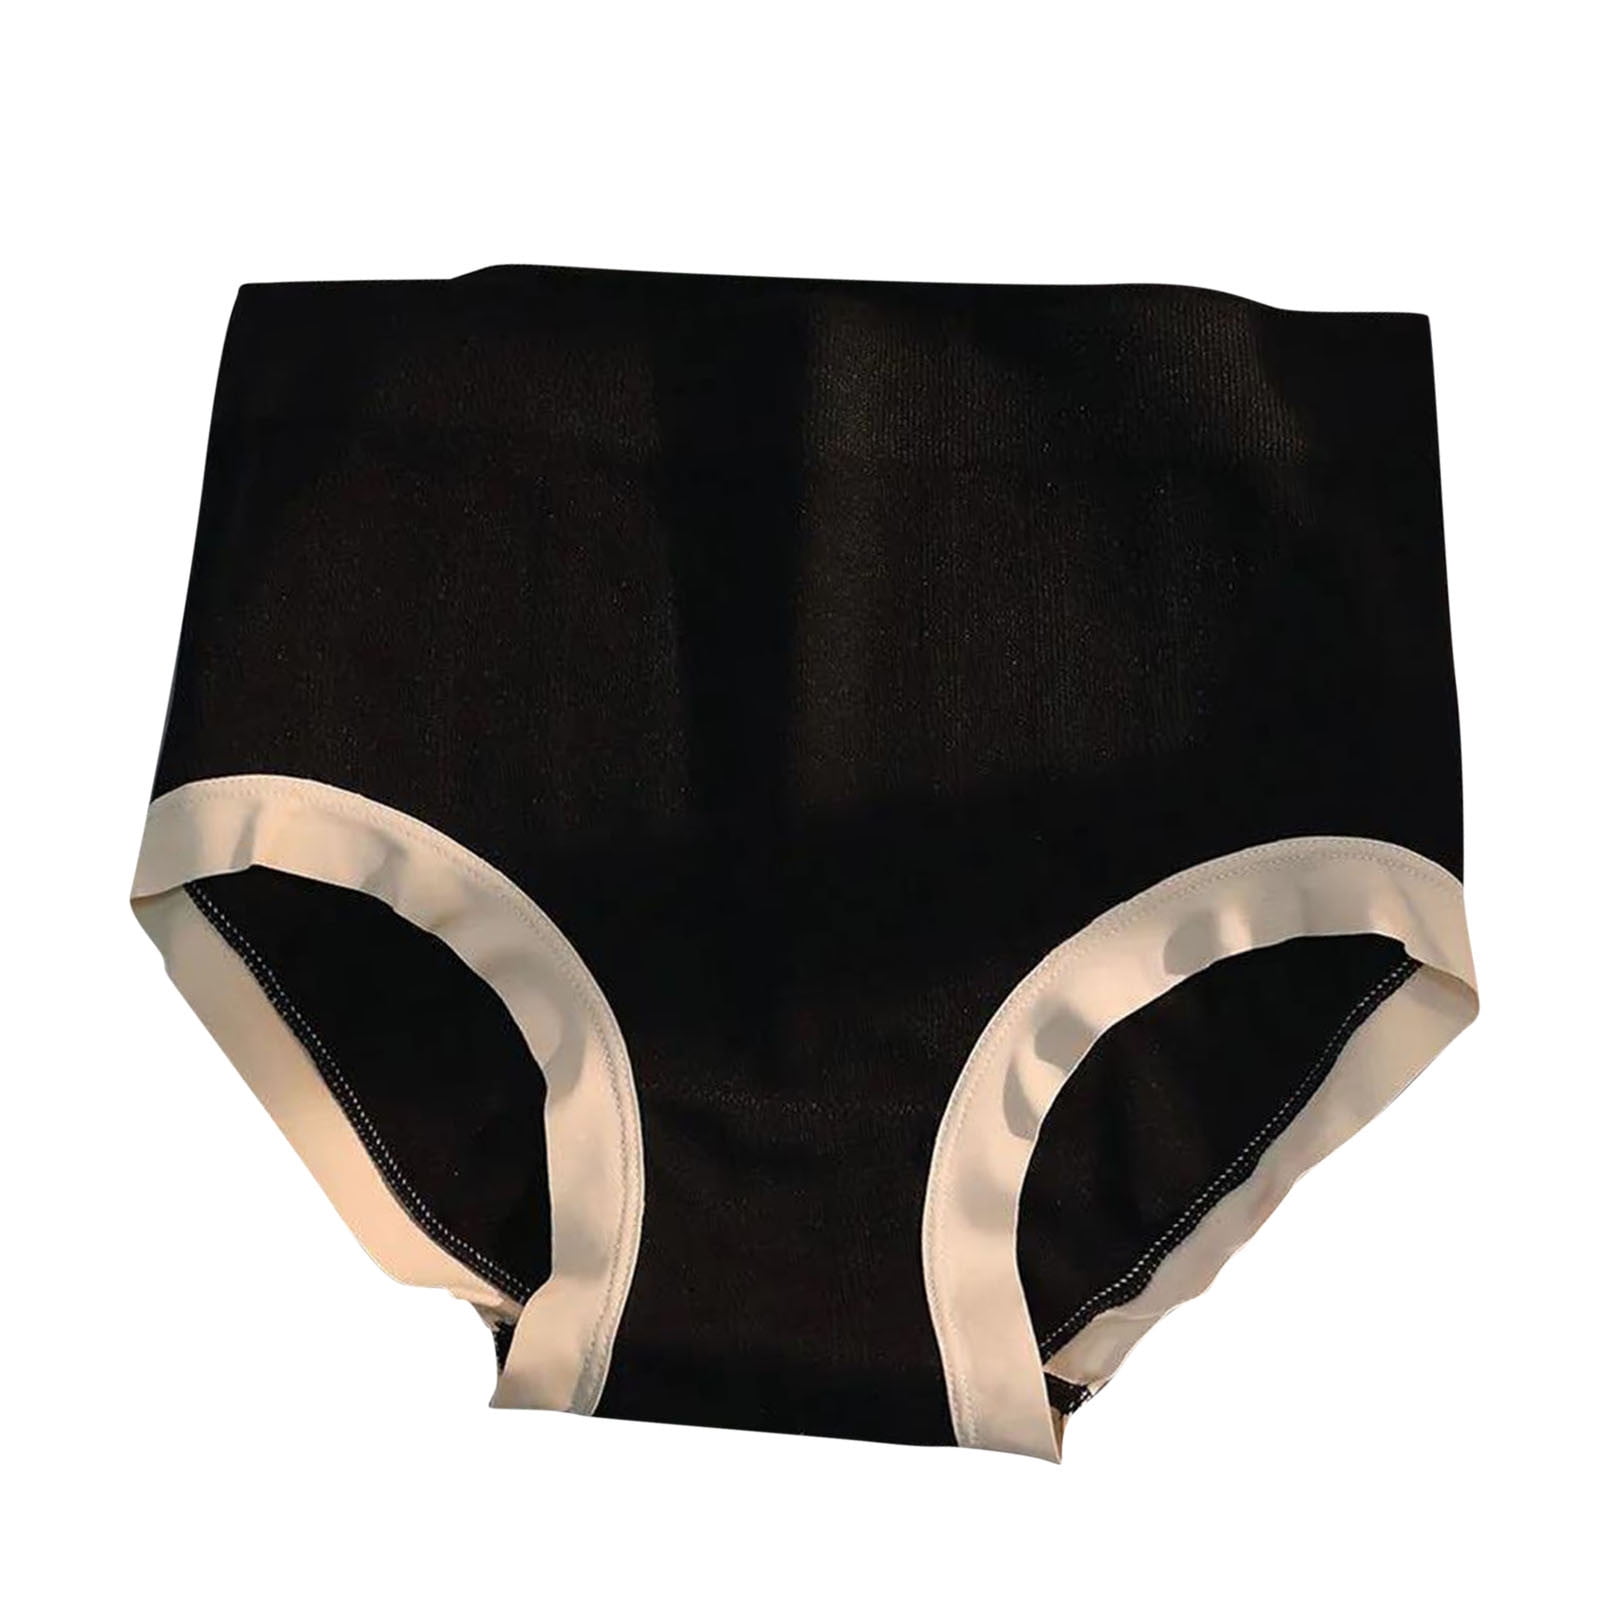 Ketyyh-chn99 Womens Underwear Panties Seamless Underwear V-Shape Panties  for Ladies Black,One Size 